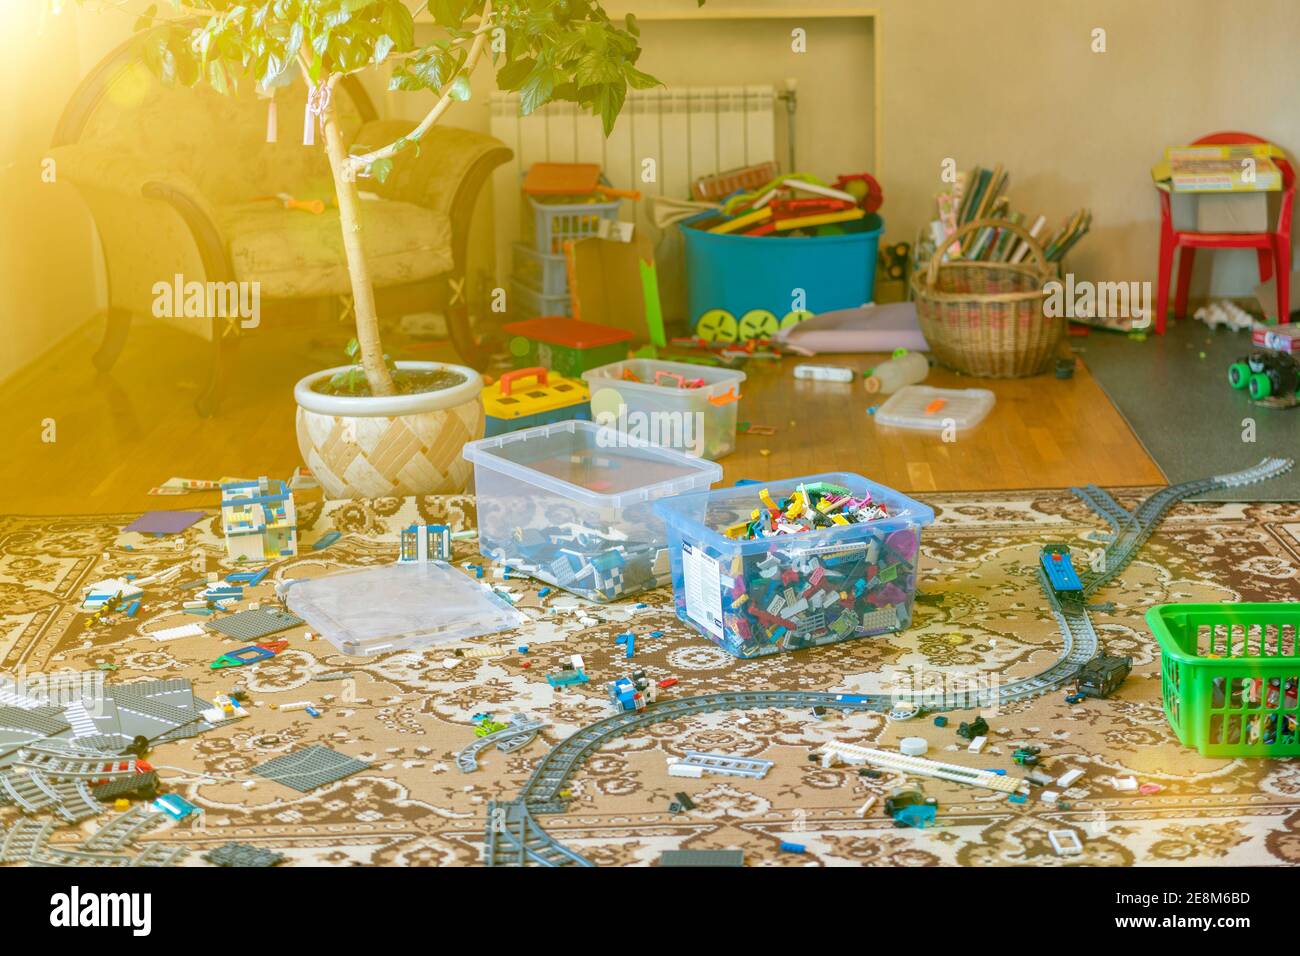 Games floor for preschoolers kindergarten. interior children's room. mess in the room. mess in the children's room, scattered toys, boxes on the floor Stock Photo